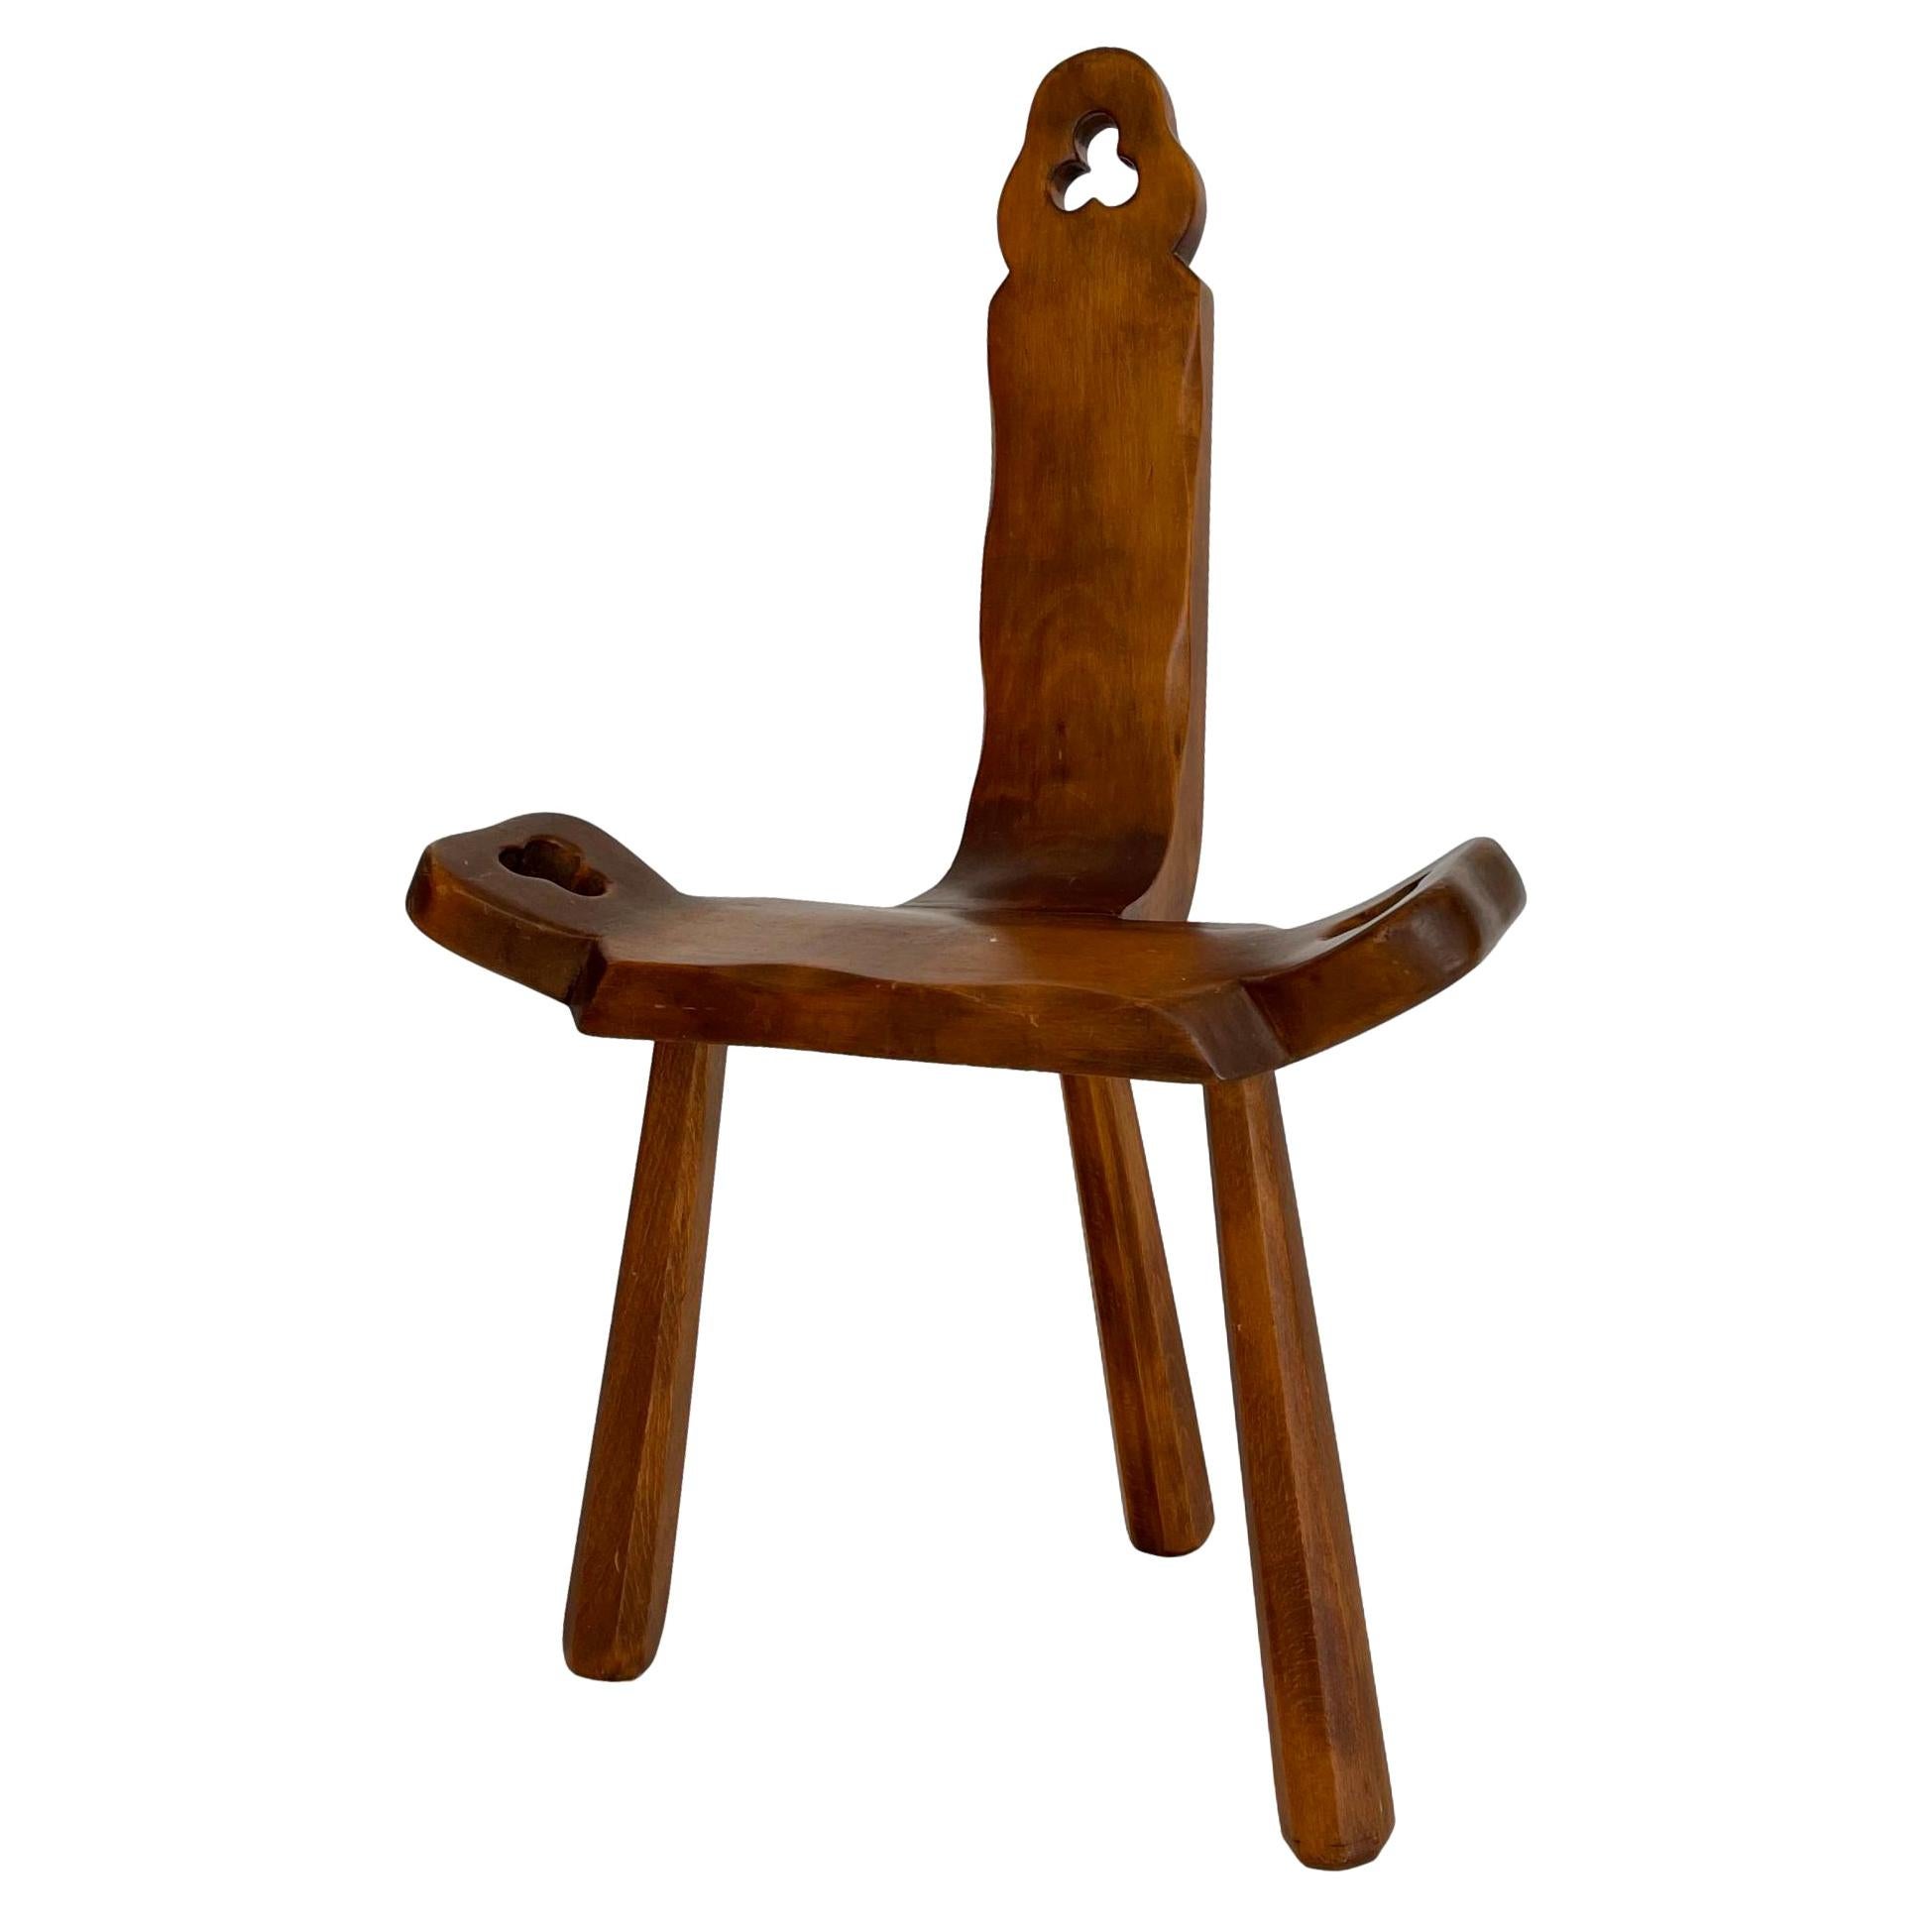 Sculptural Wood Tripod Chair